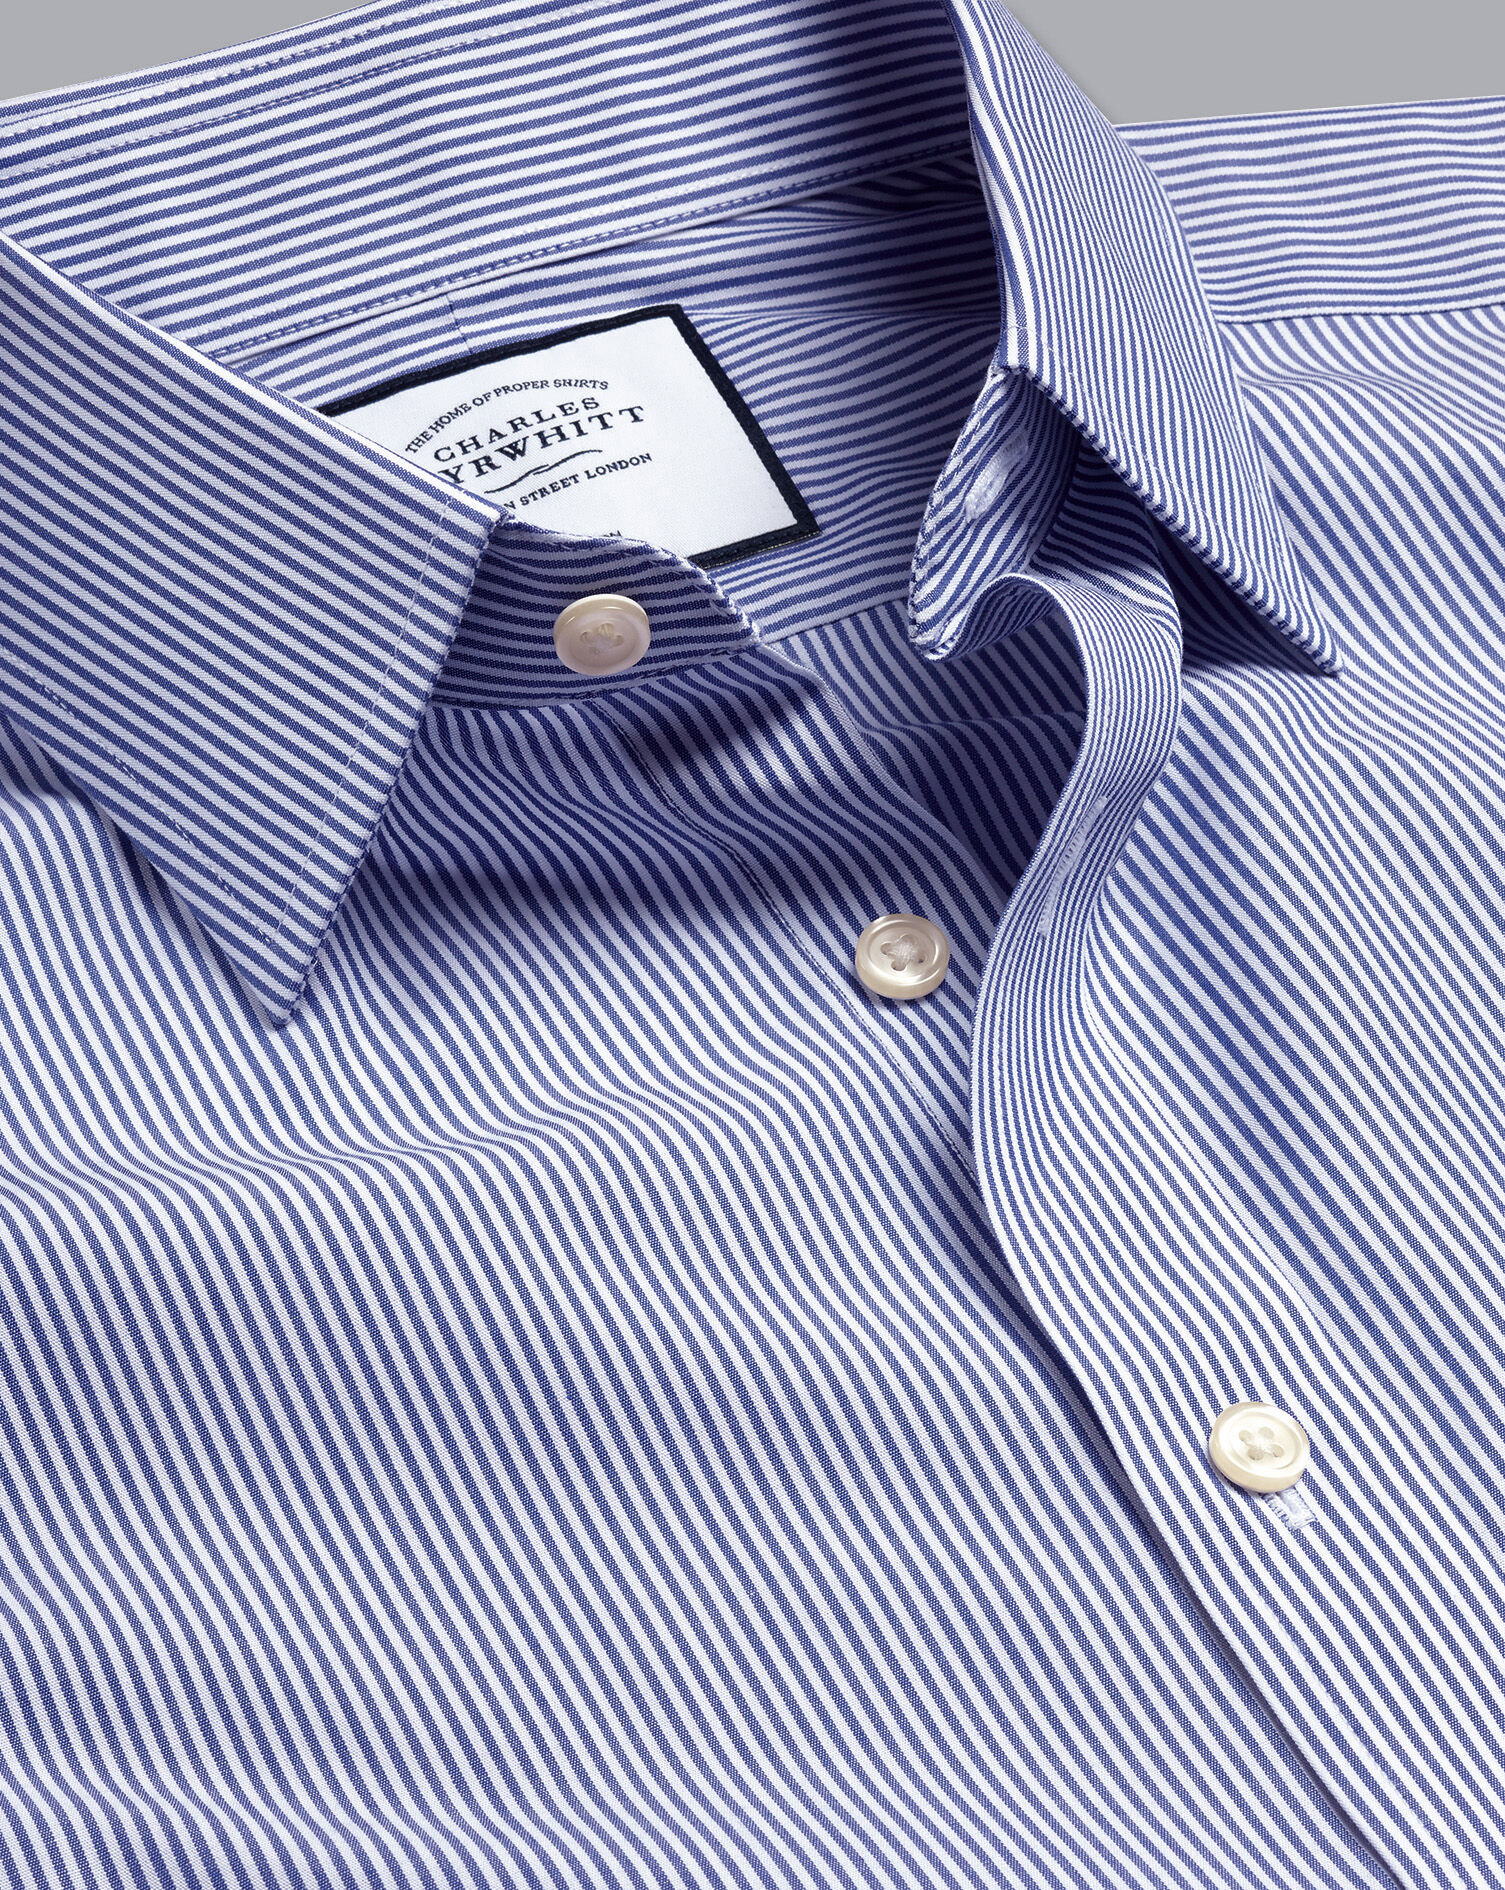 Charles Tyrwhitt Men's Charles Tyrwhitt Shirt Blue And White Stripe 14.5 Collar Small 